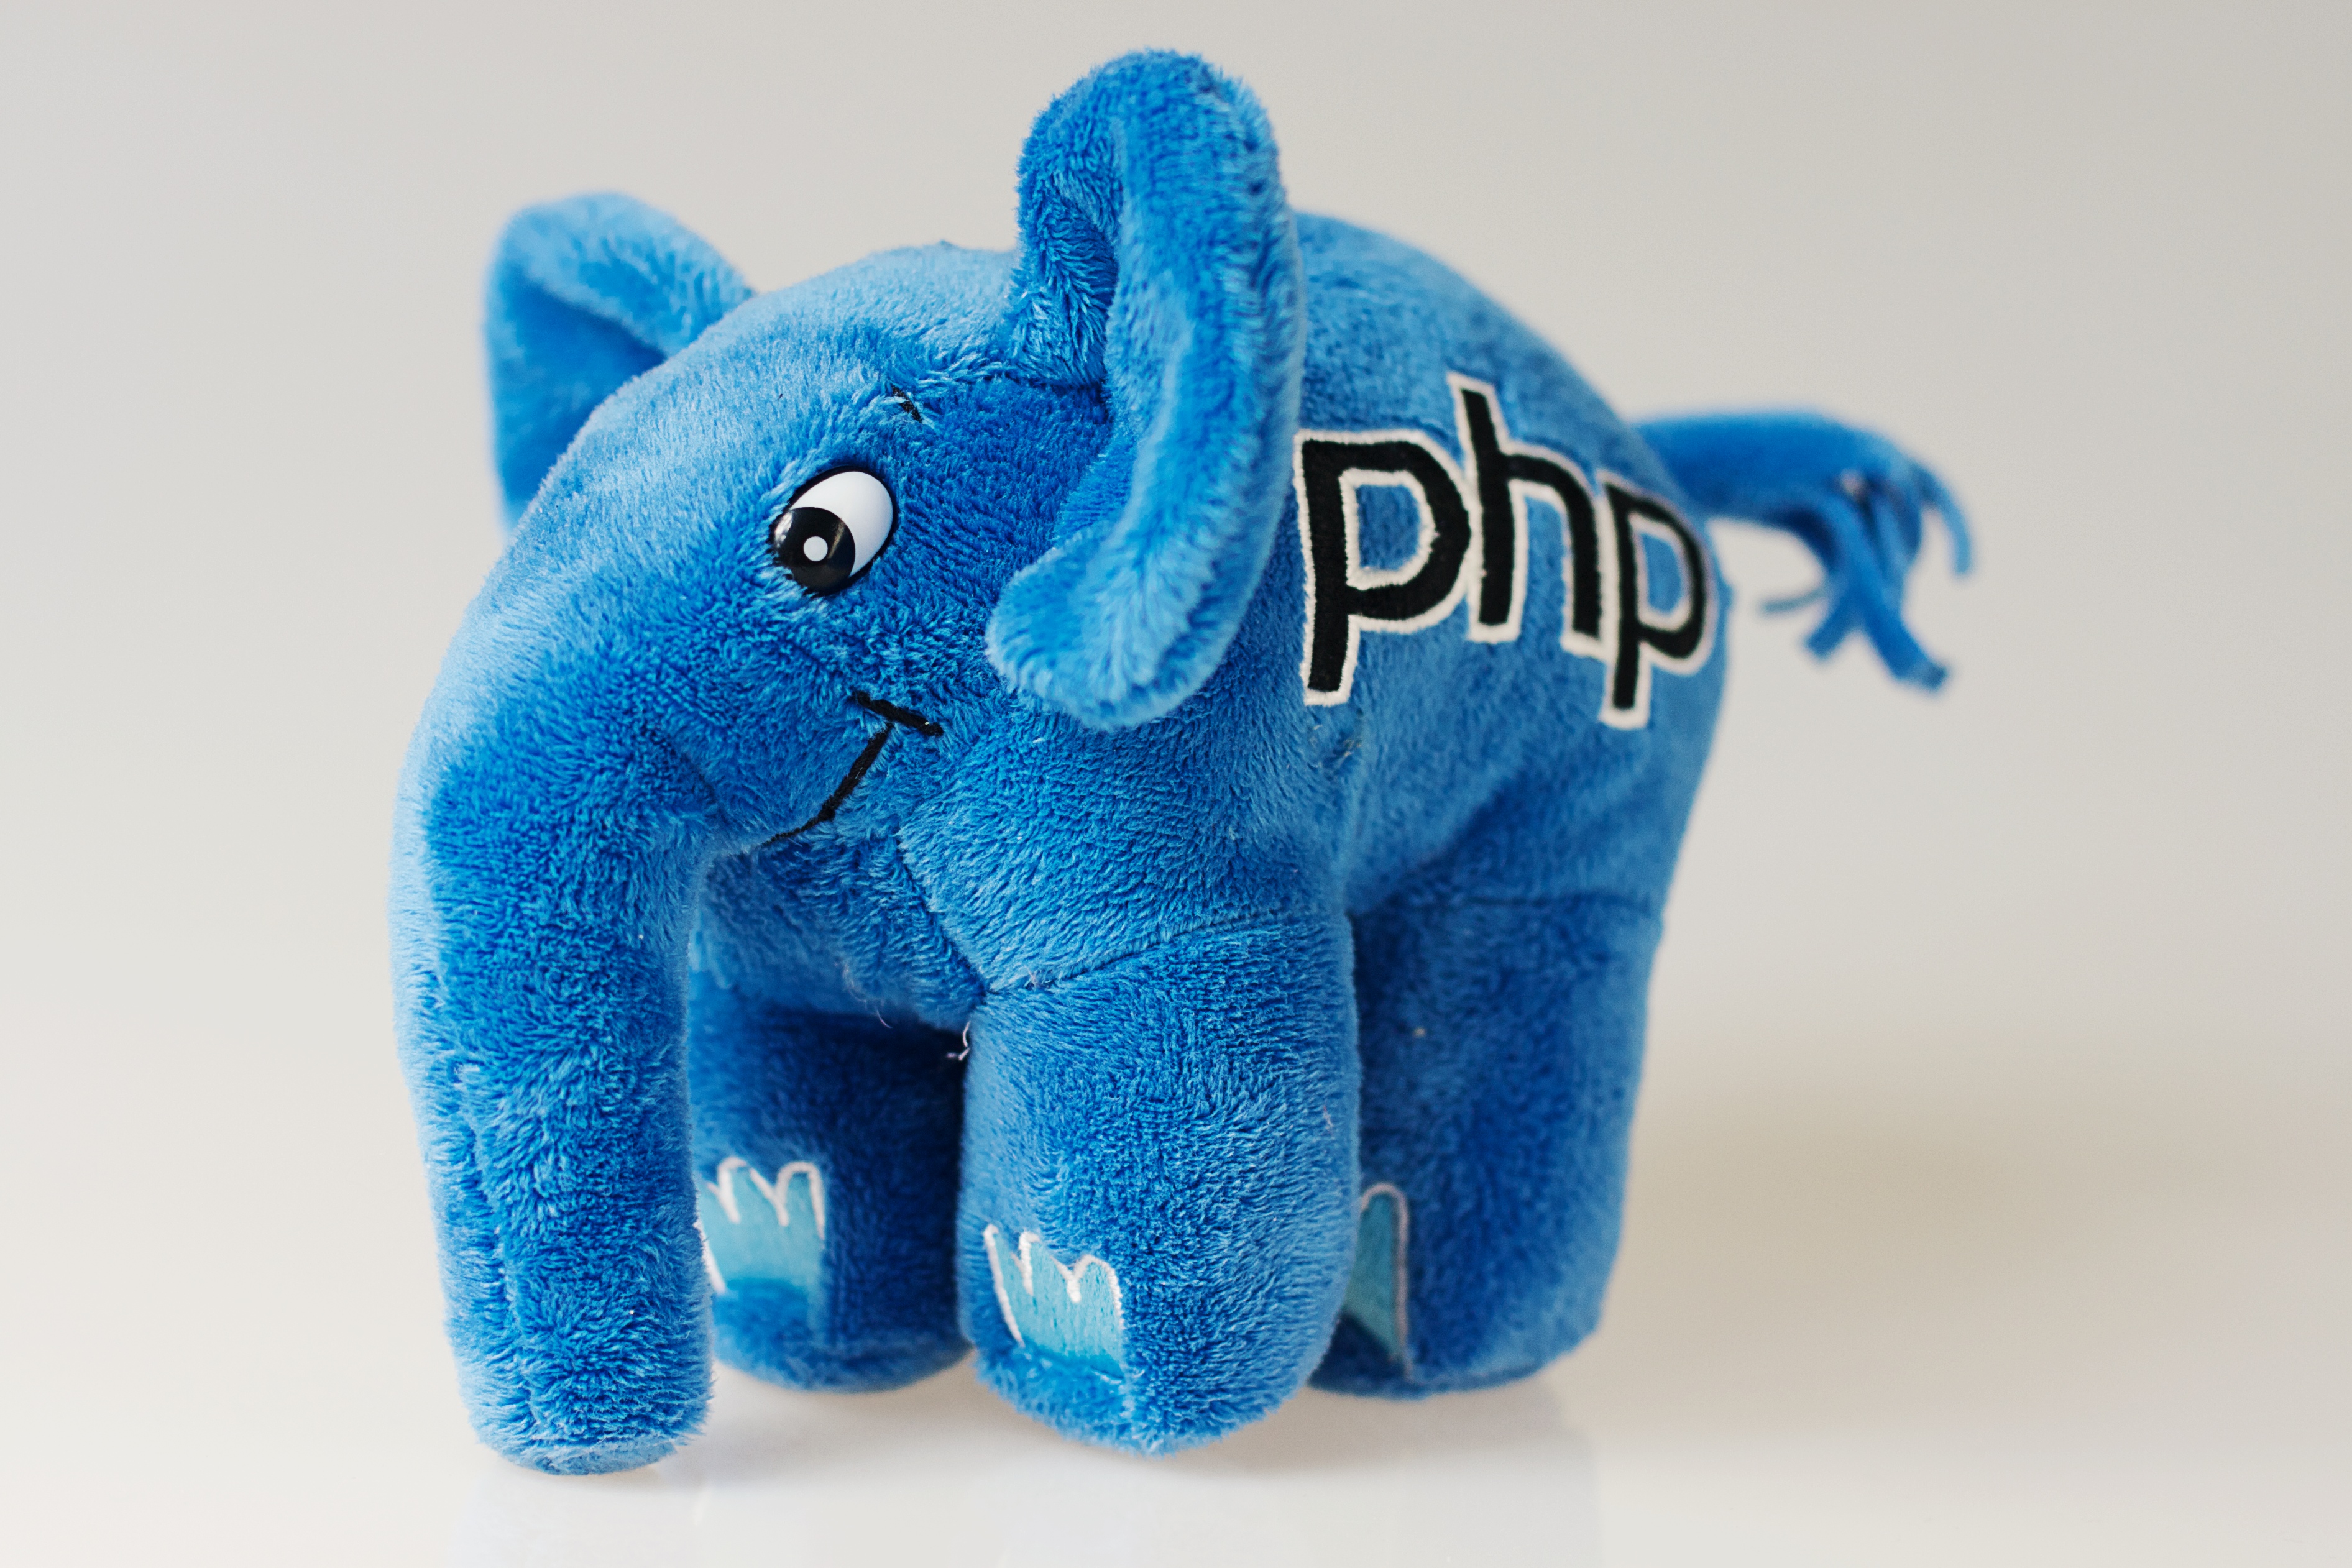 Php unique. Php слон. Слоненок php. Php слон лого. Php мягкая игрушка.